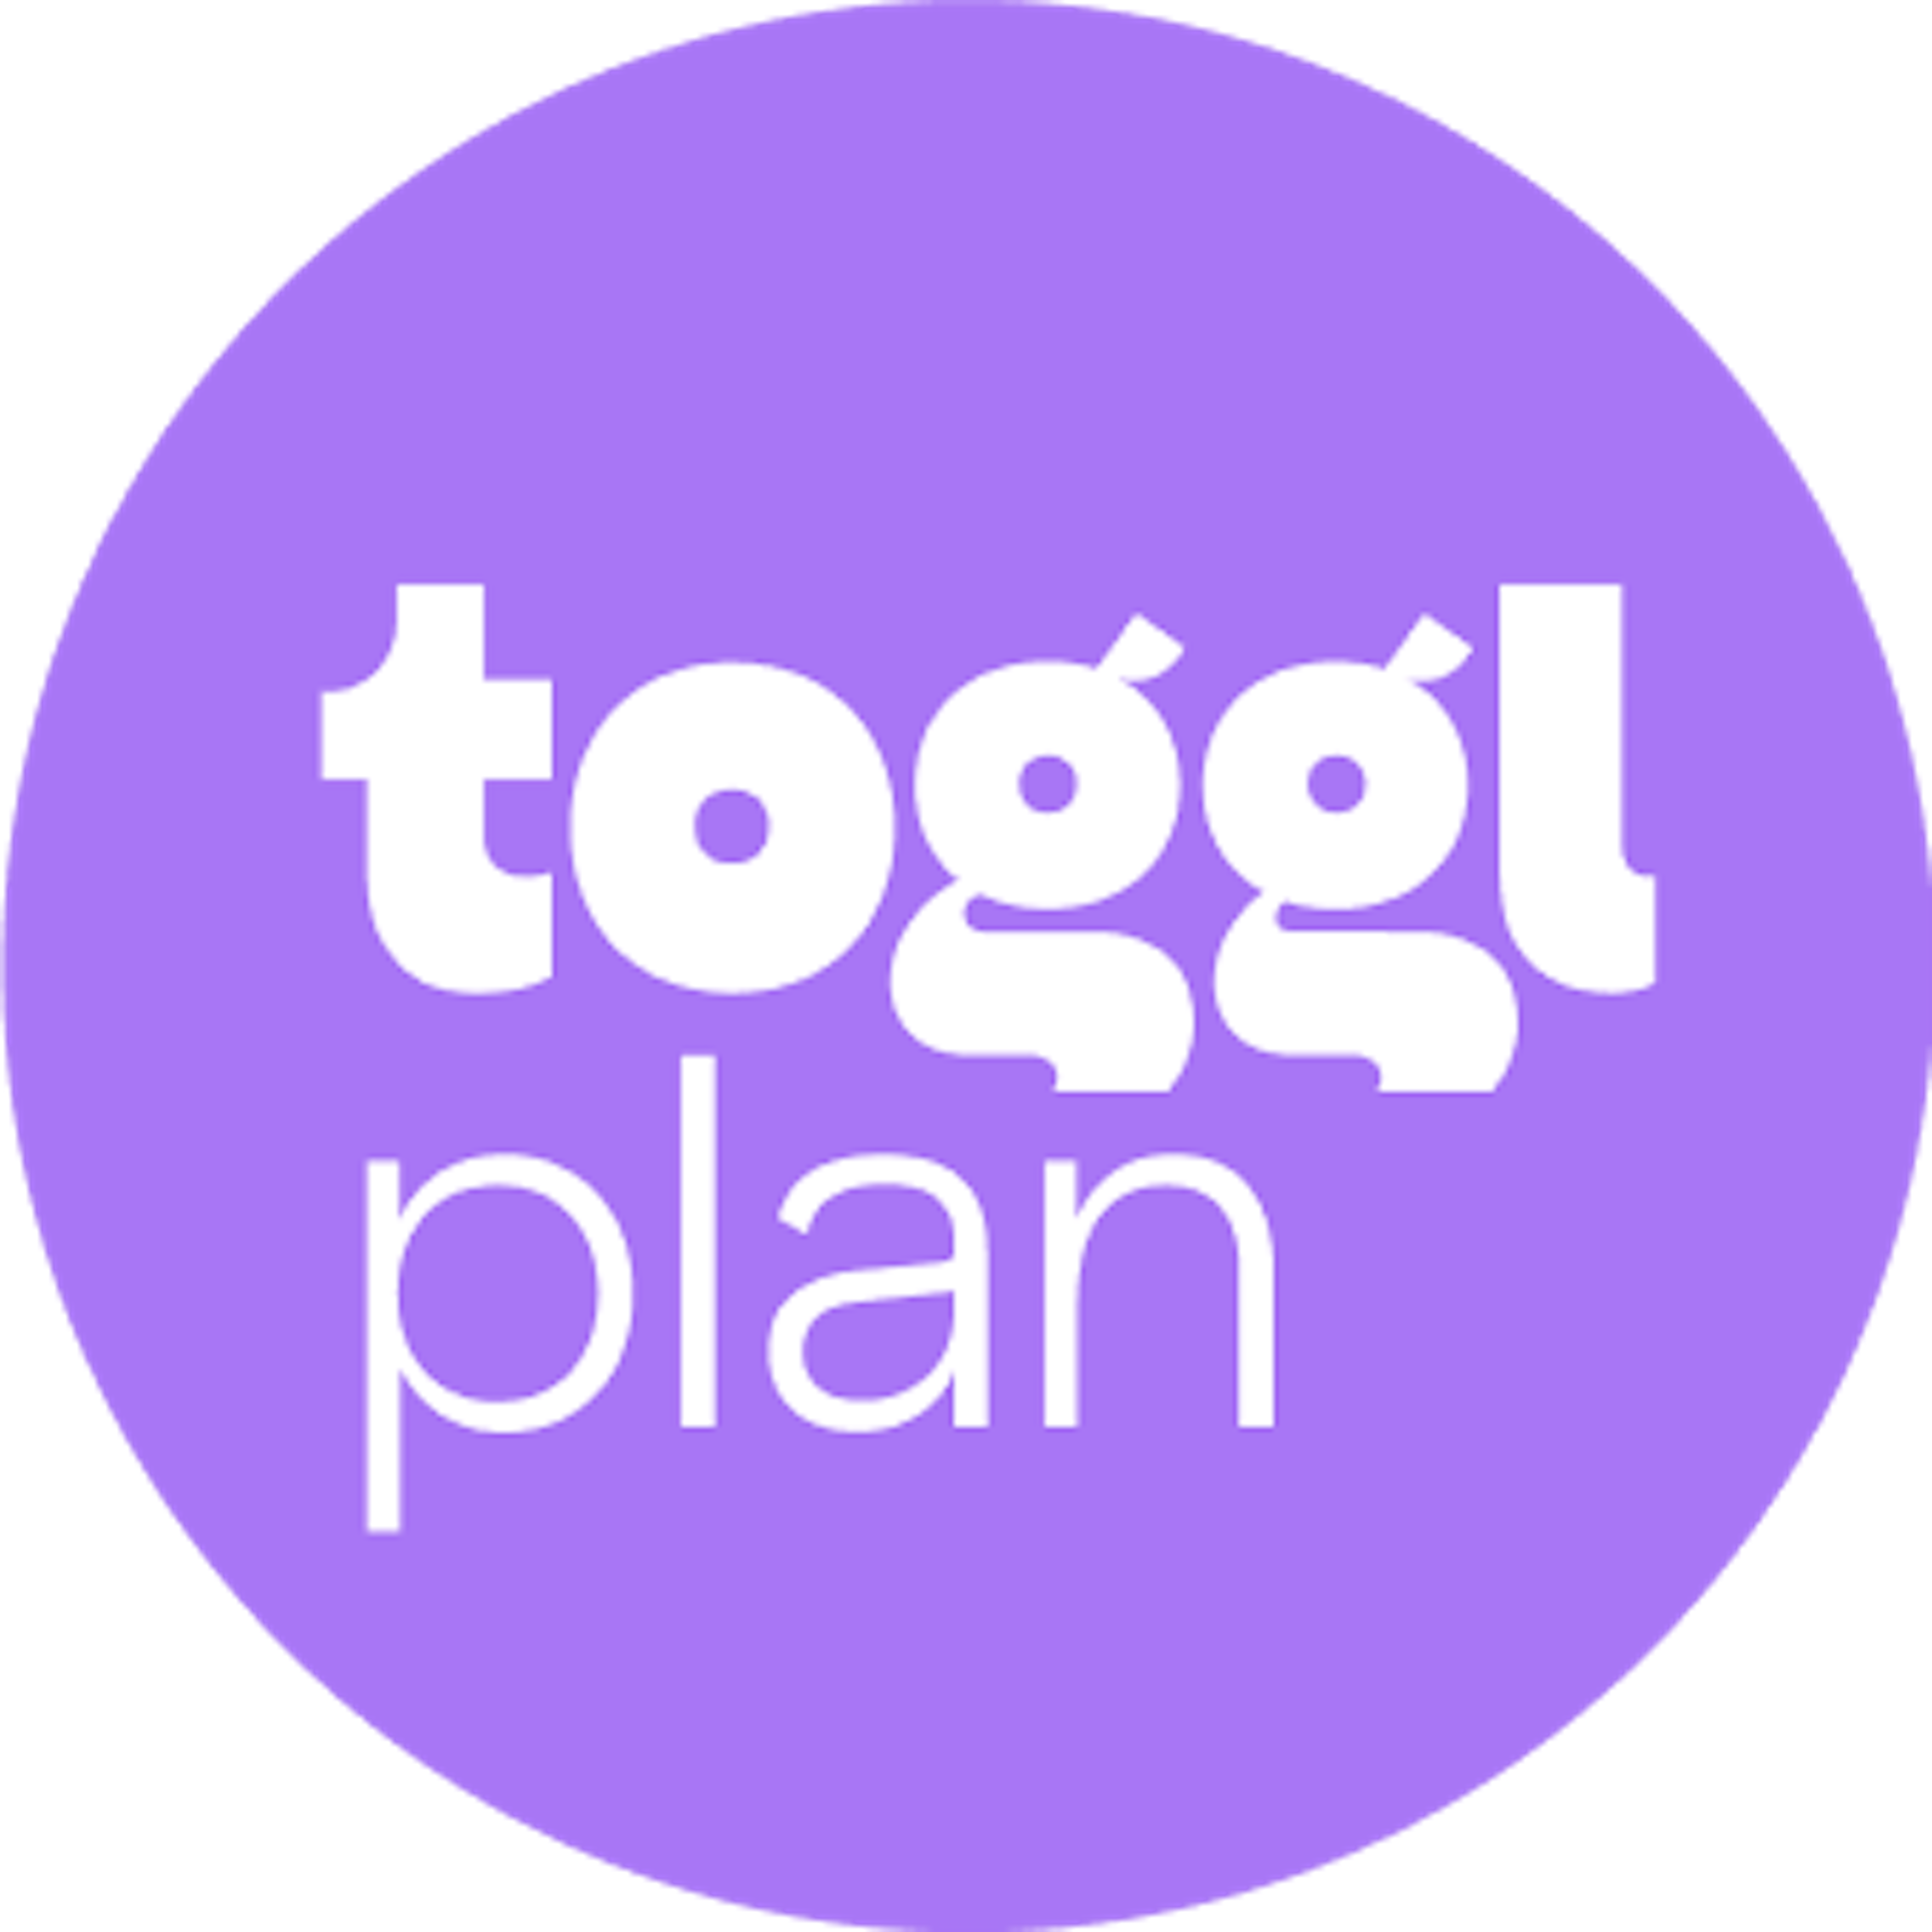 Toggl Plan Logo